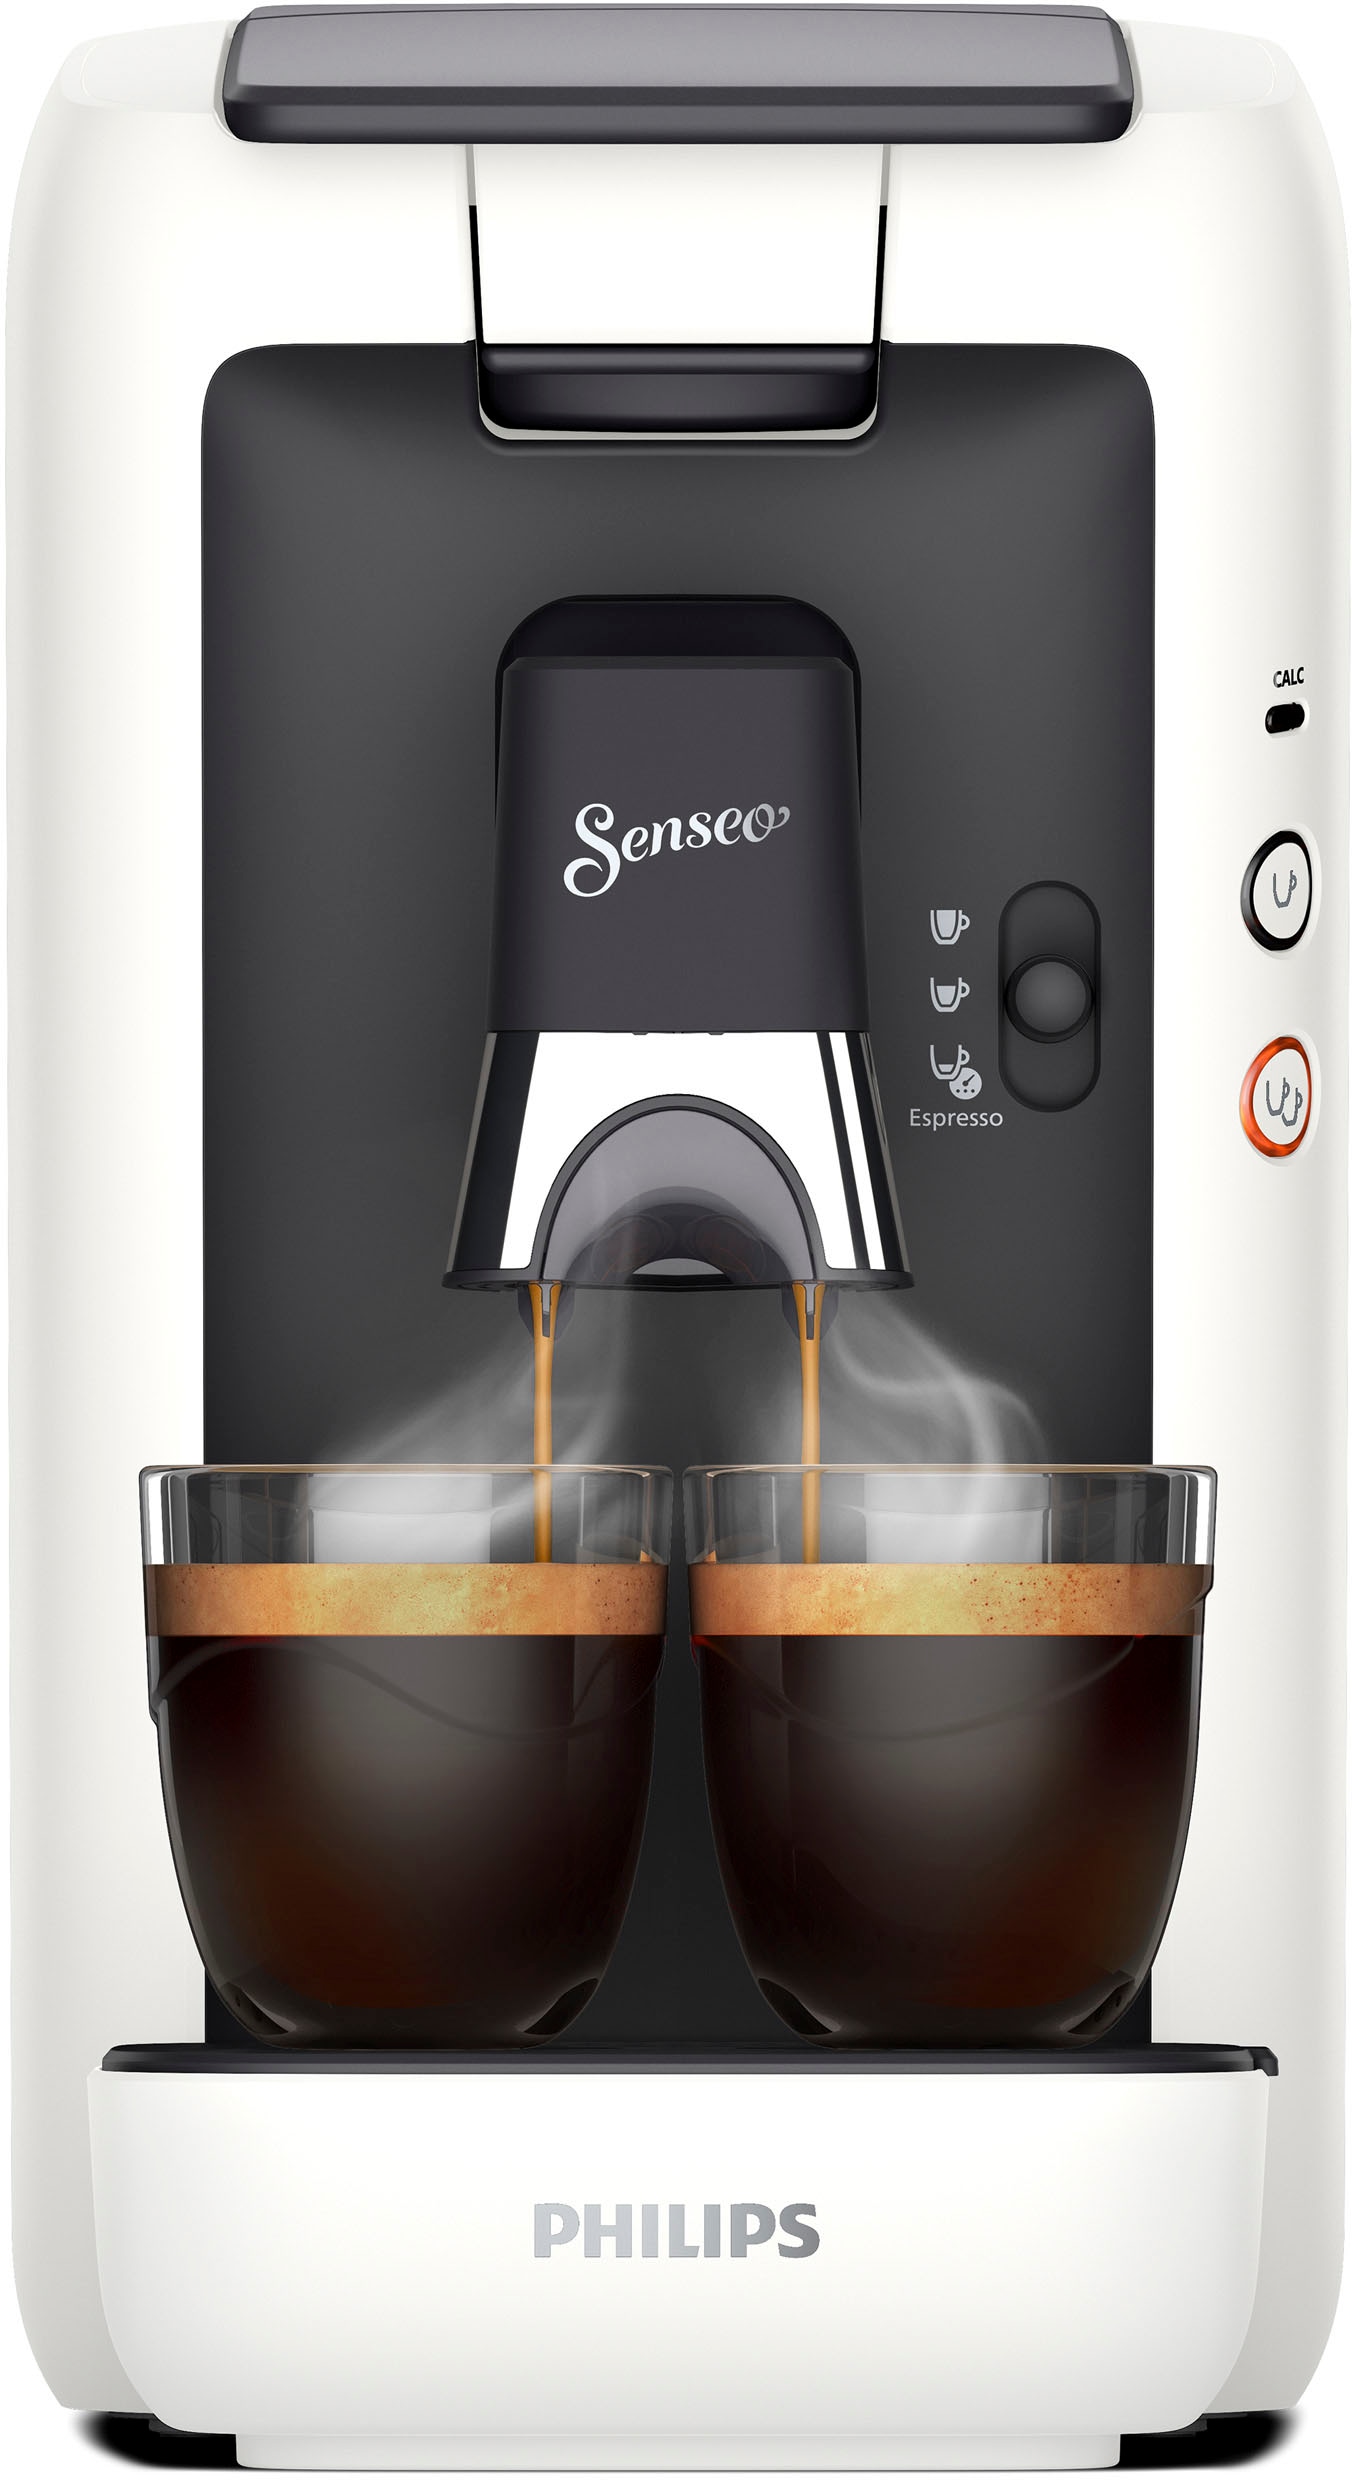 Philips Senseo »Maestro € Gratis-Zugaben Kaffeespezialitäten«, Plastik, 80% Wert aus kaufen von im Memo-Funktion, CSA260/10, 14,- UVP +3 inkl. Kaffeepadmaschine recyceltem